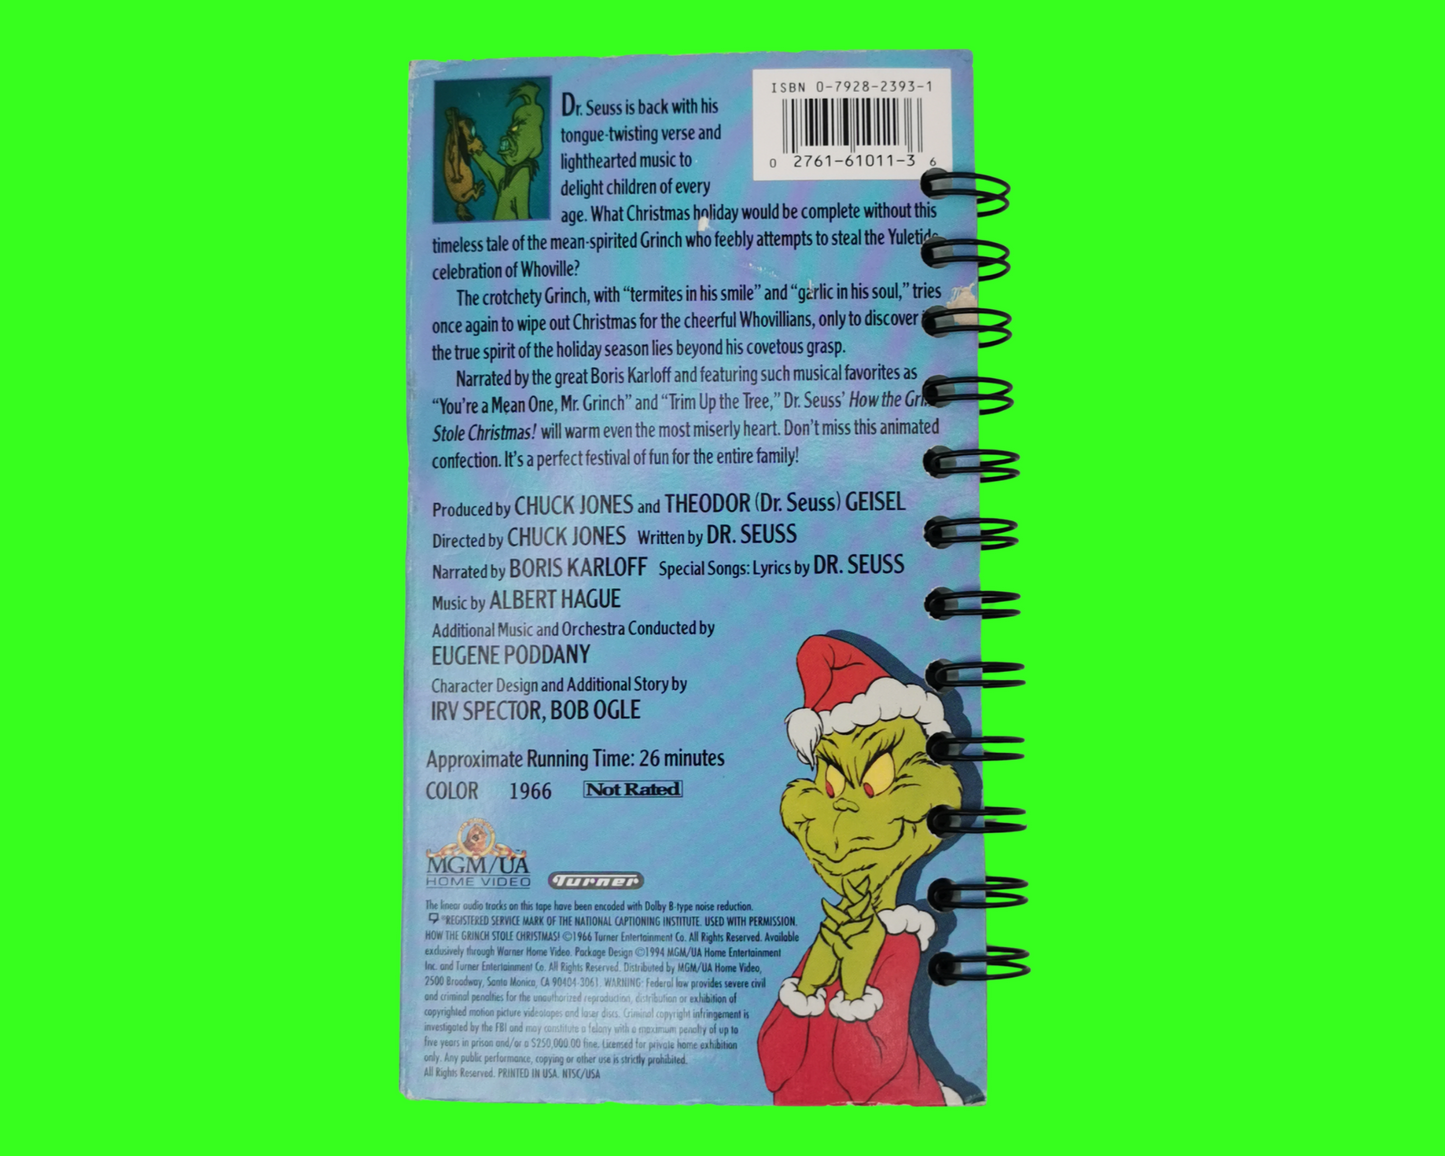 Comment le Grinch a volé Noël! Cahier de film VHS recyclé